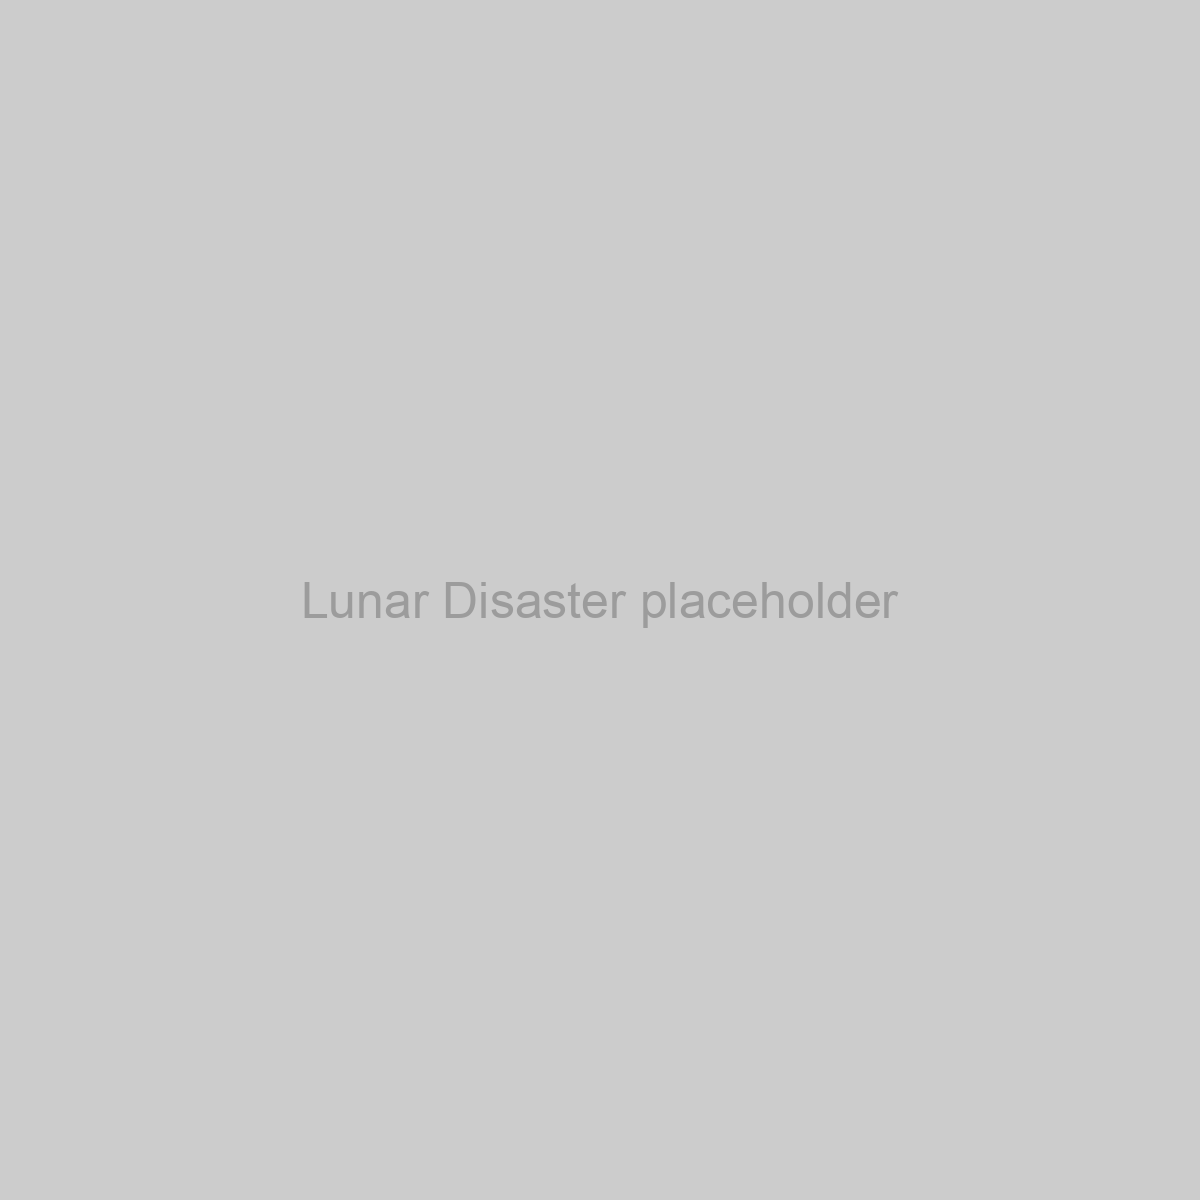 Lunar Disaster Placeholder Image